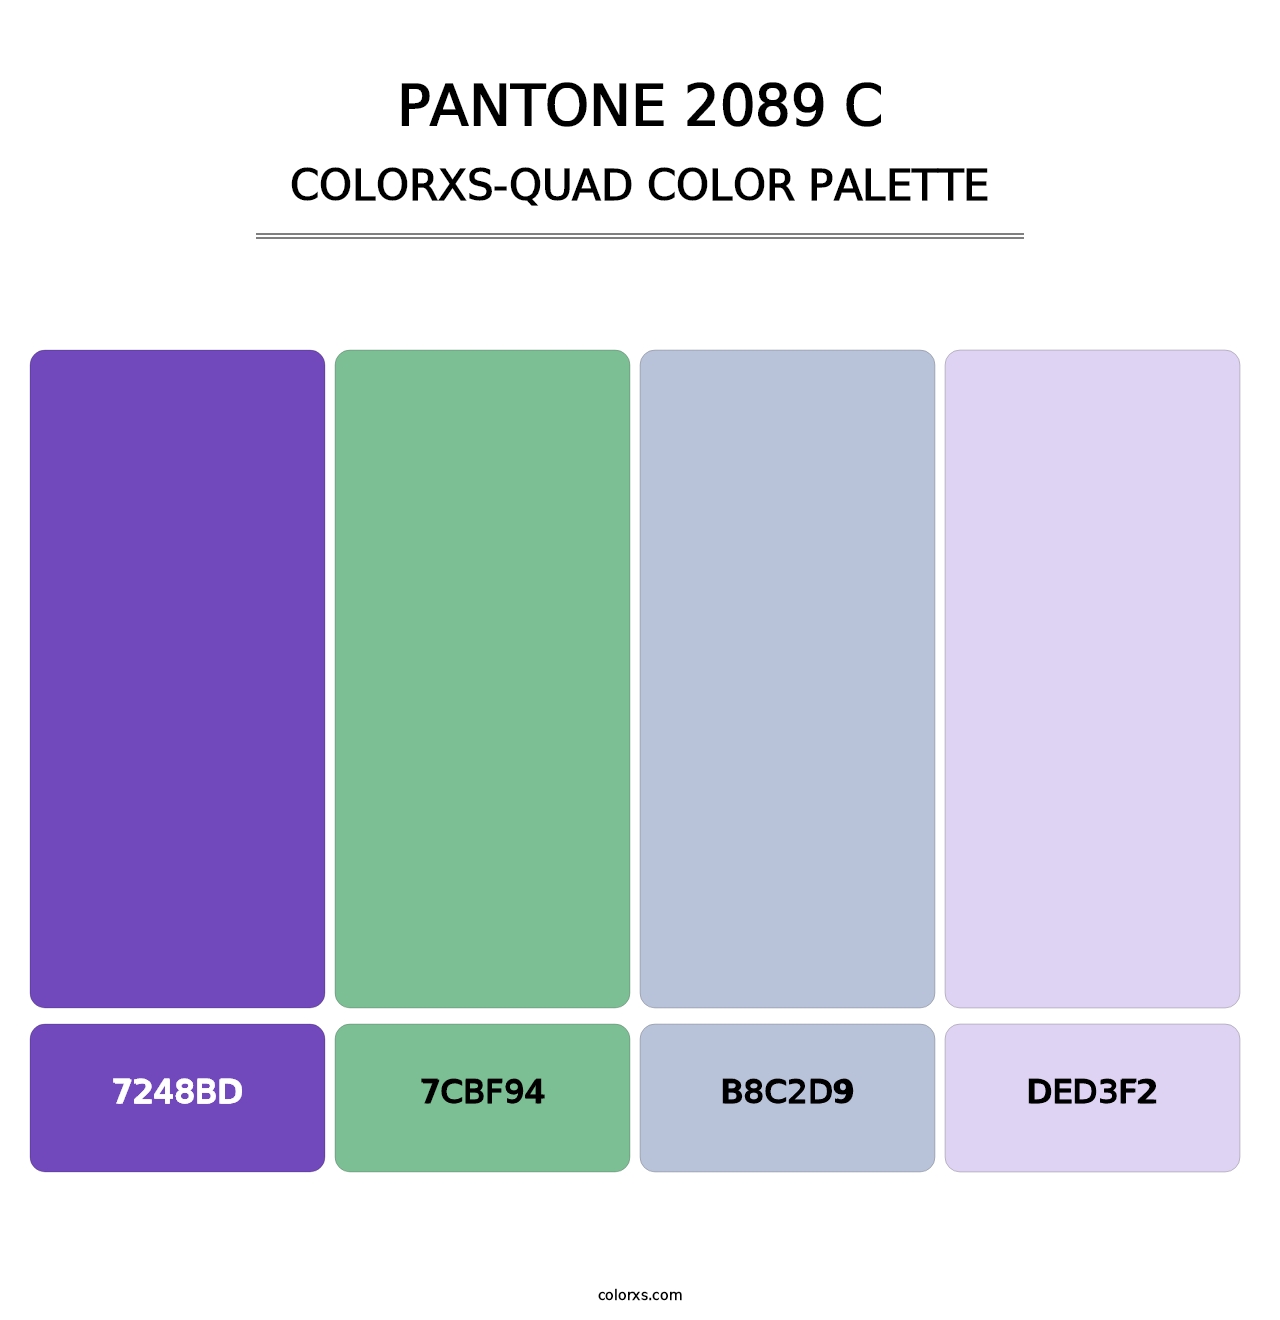 PANTONE 2089 C - Colorxs Quad Palette